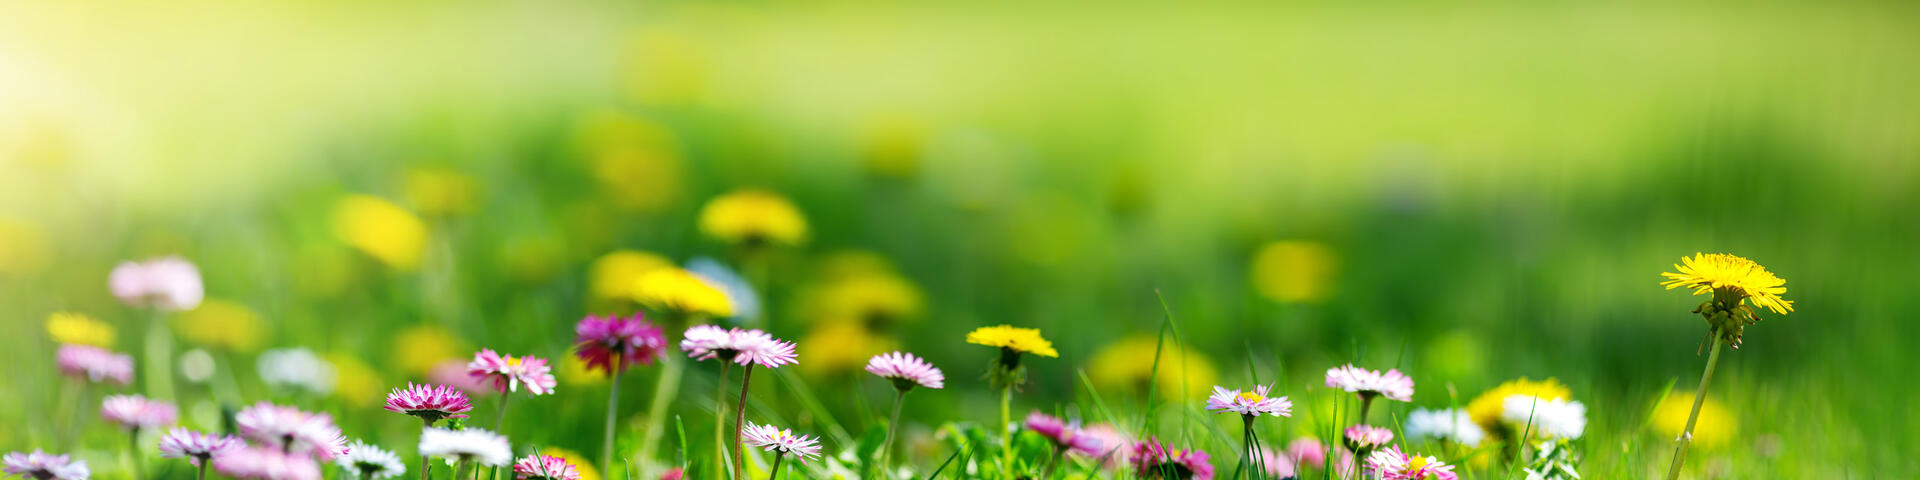 Blommor på gräsmatta